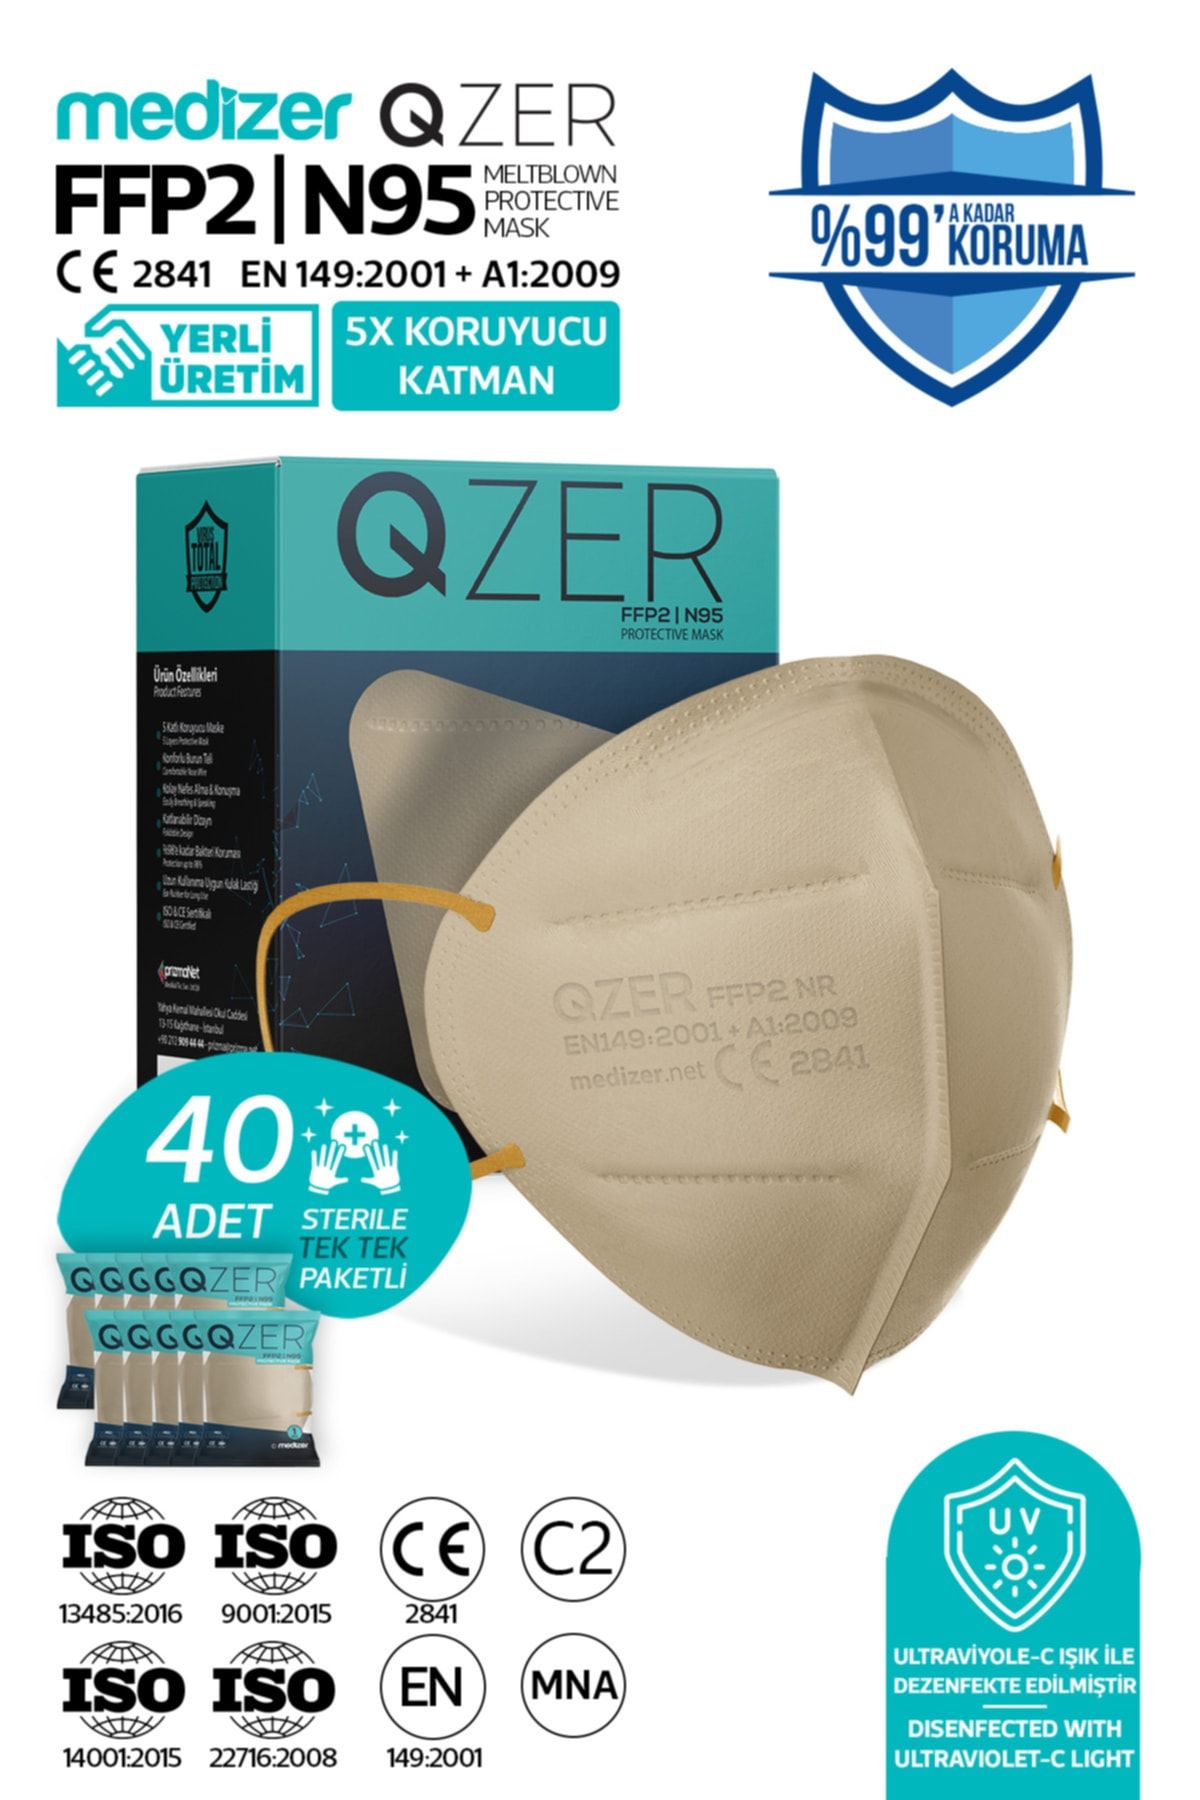 Medizer Qzer 40 Adet Krem Renk 5 Katmanlı Ffp2 Maske